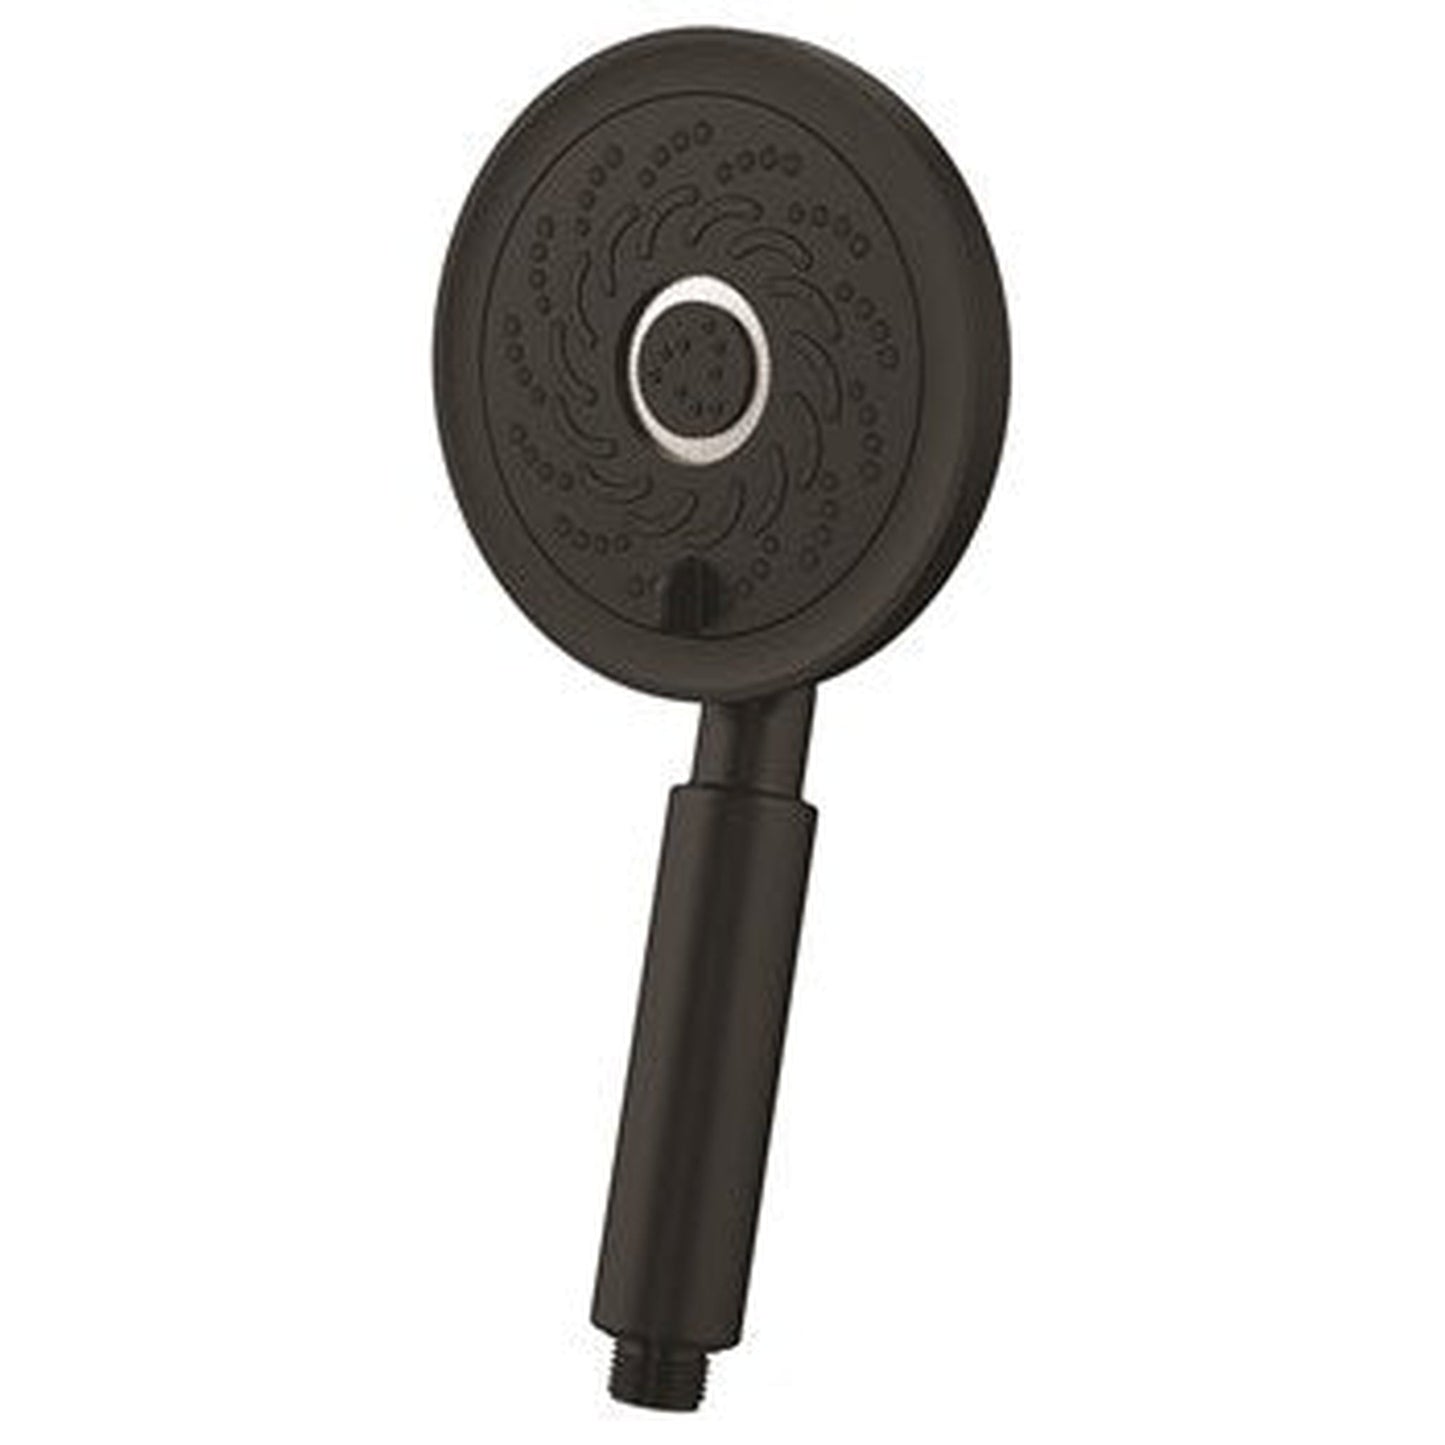 Speakman Neo 5-Function 1.5 GPM Matte Black Exhilaration Spray Technology Handheld Shower Head